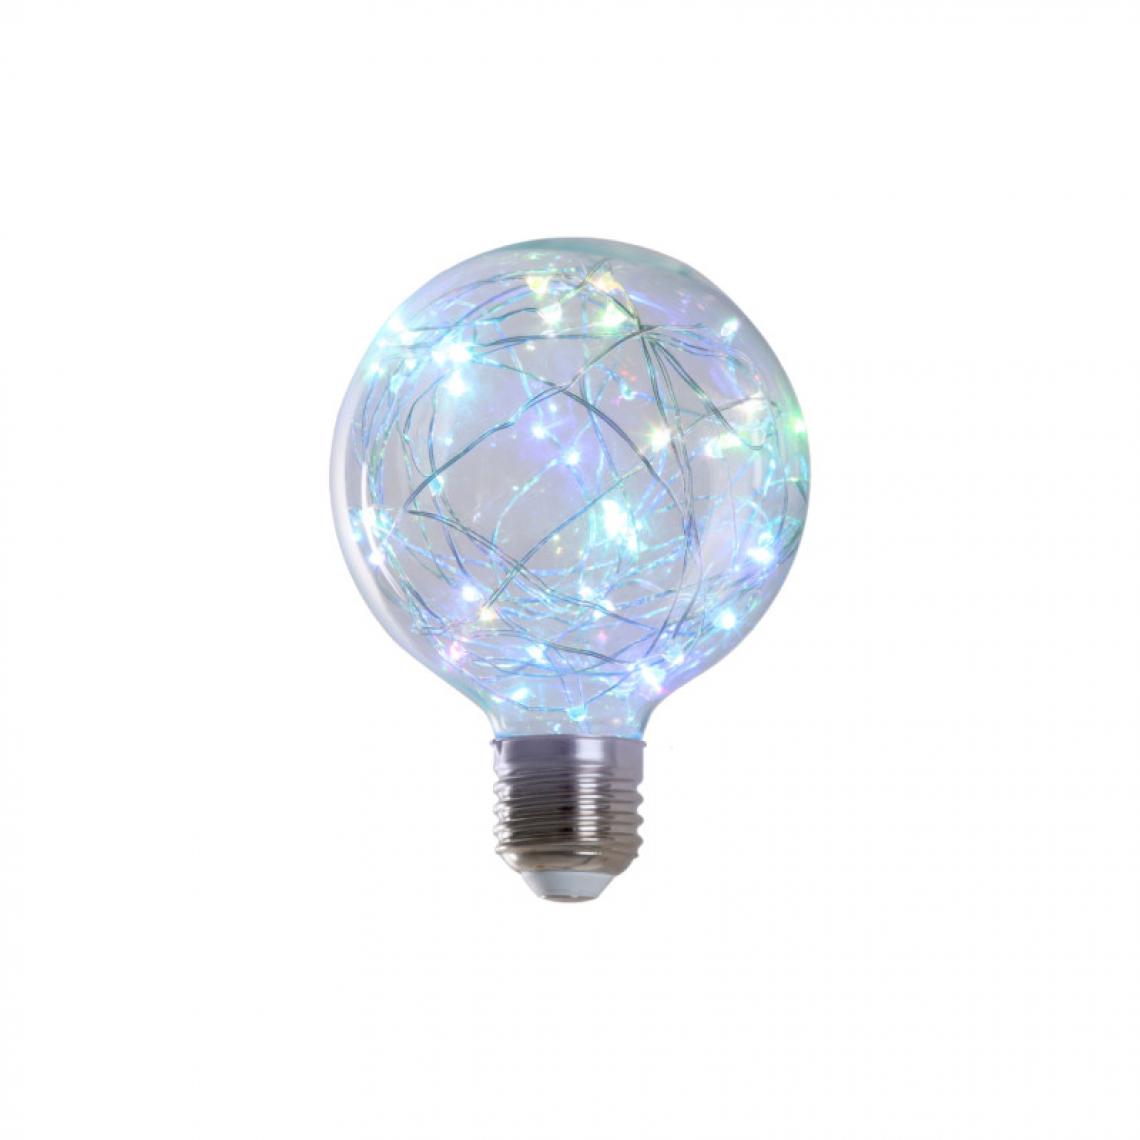 Xxcell - Ampoule LED globe RVB à fil de cuivre XXCELL - 2 W - E27 - Ampoules LED